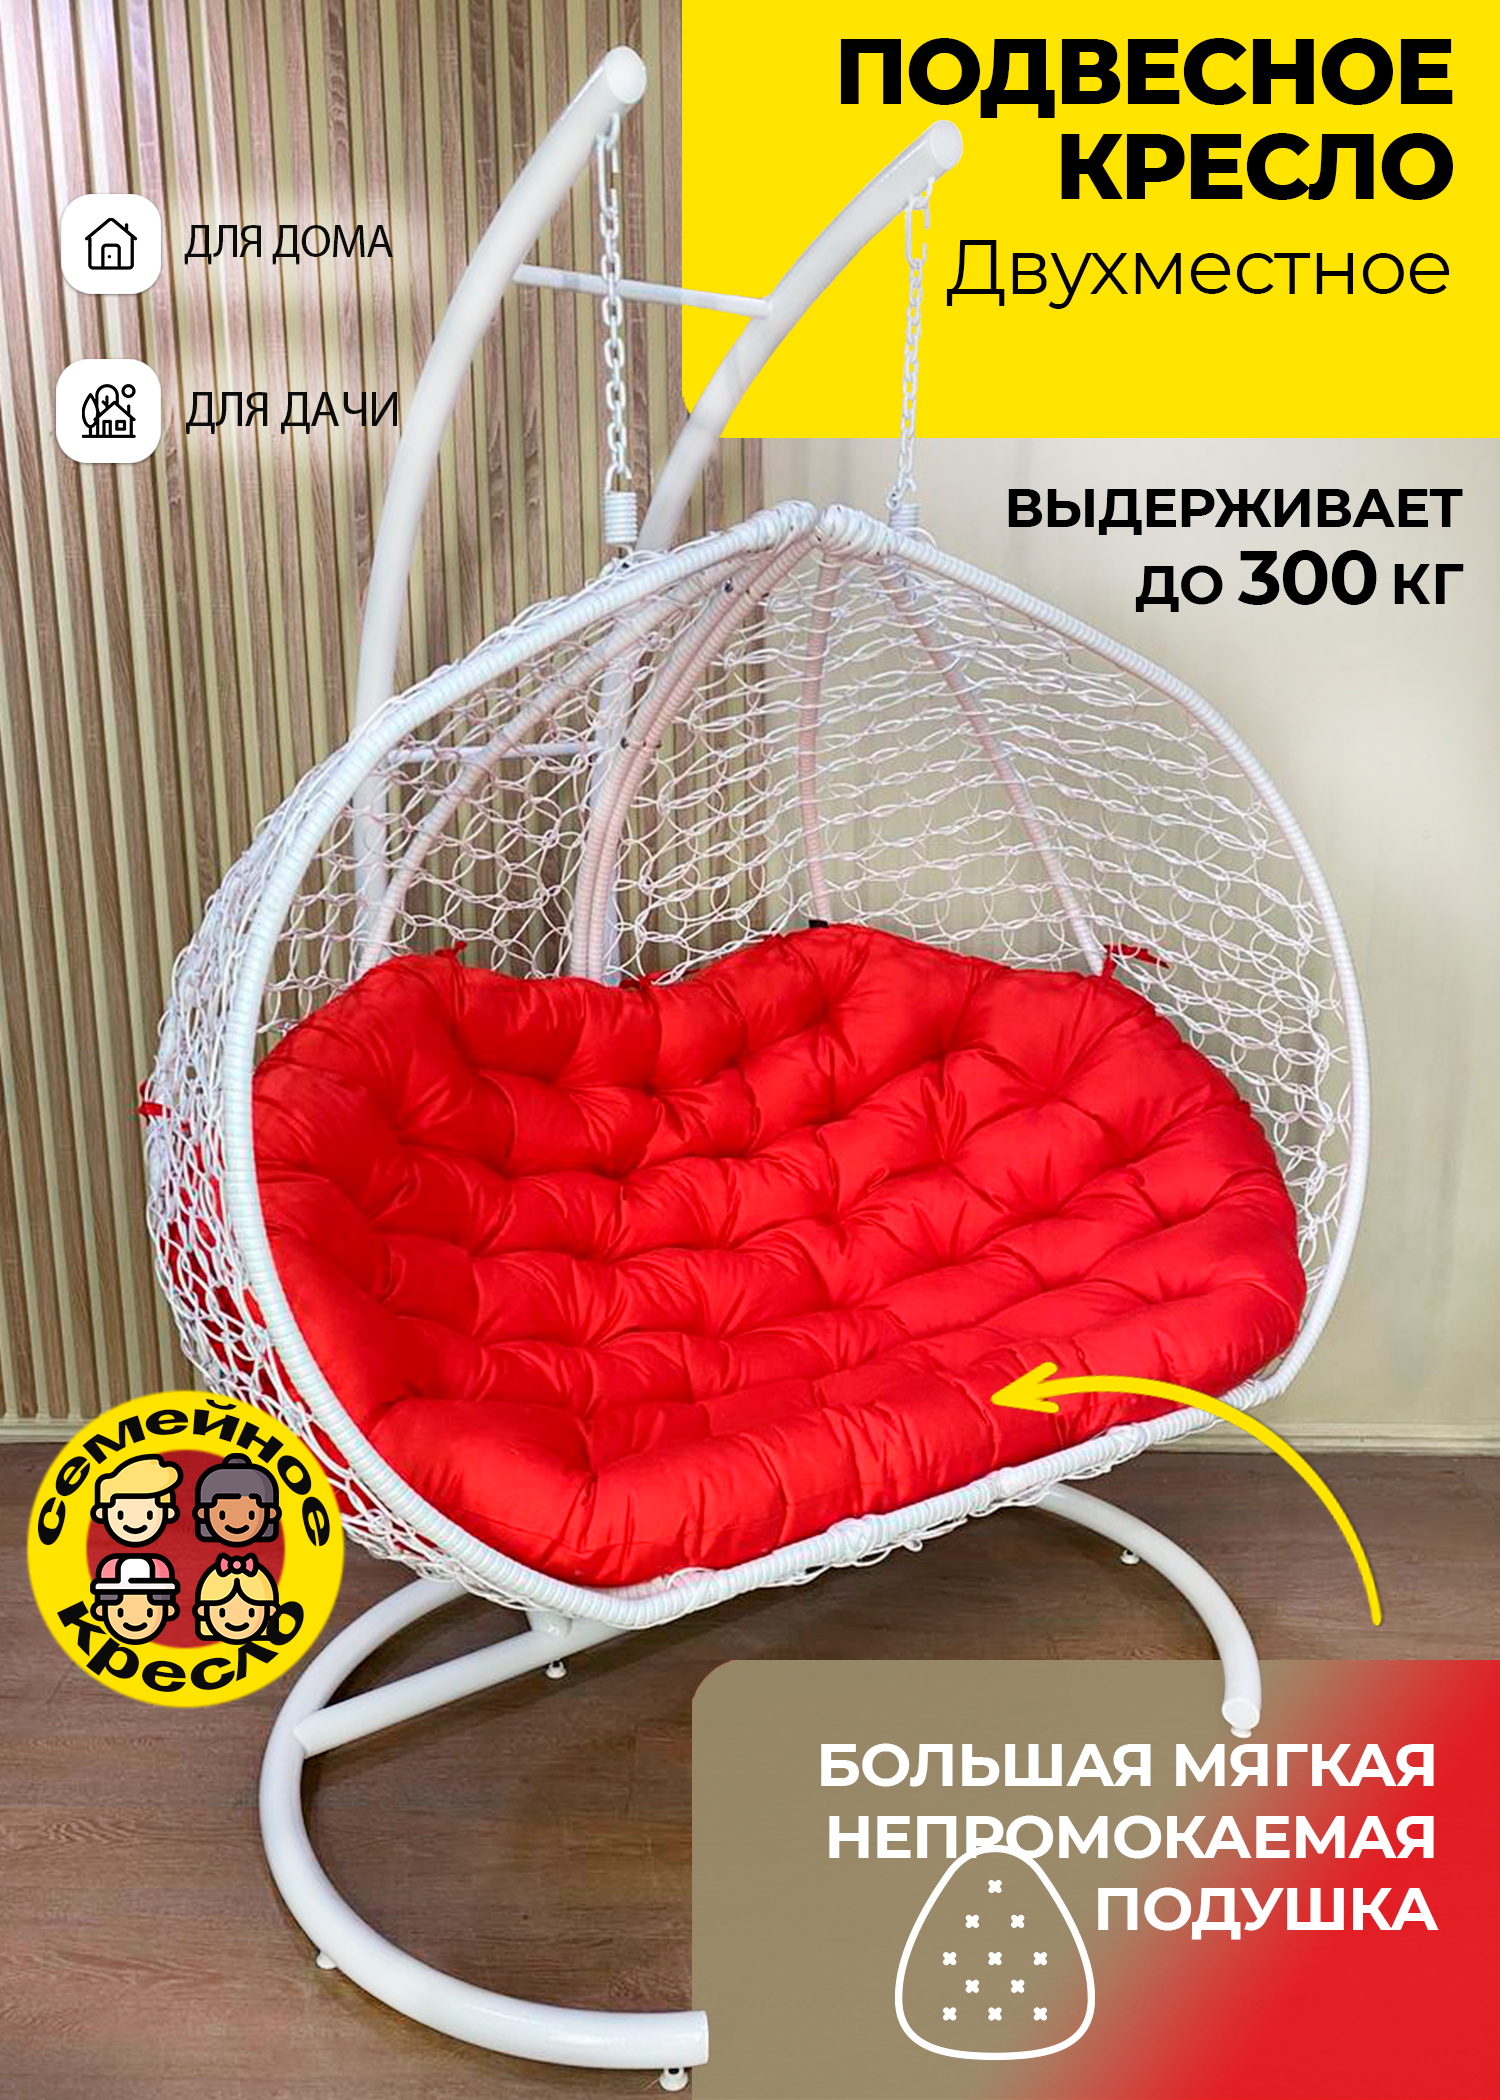 Подвесное кресло Pletenev "Двухместное" с непромокаемой уличной подушкой - фотография № 1